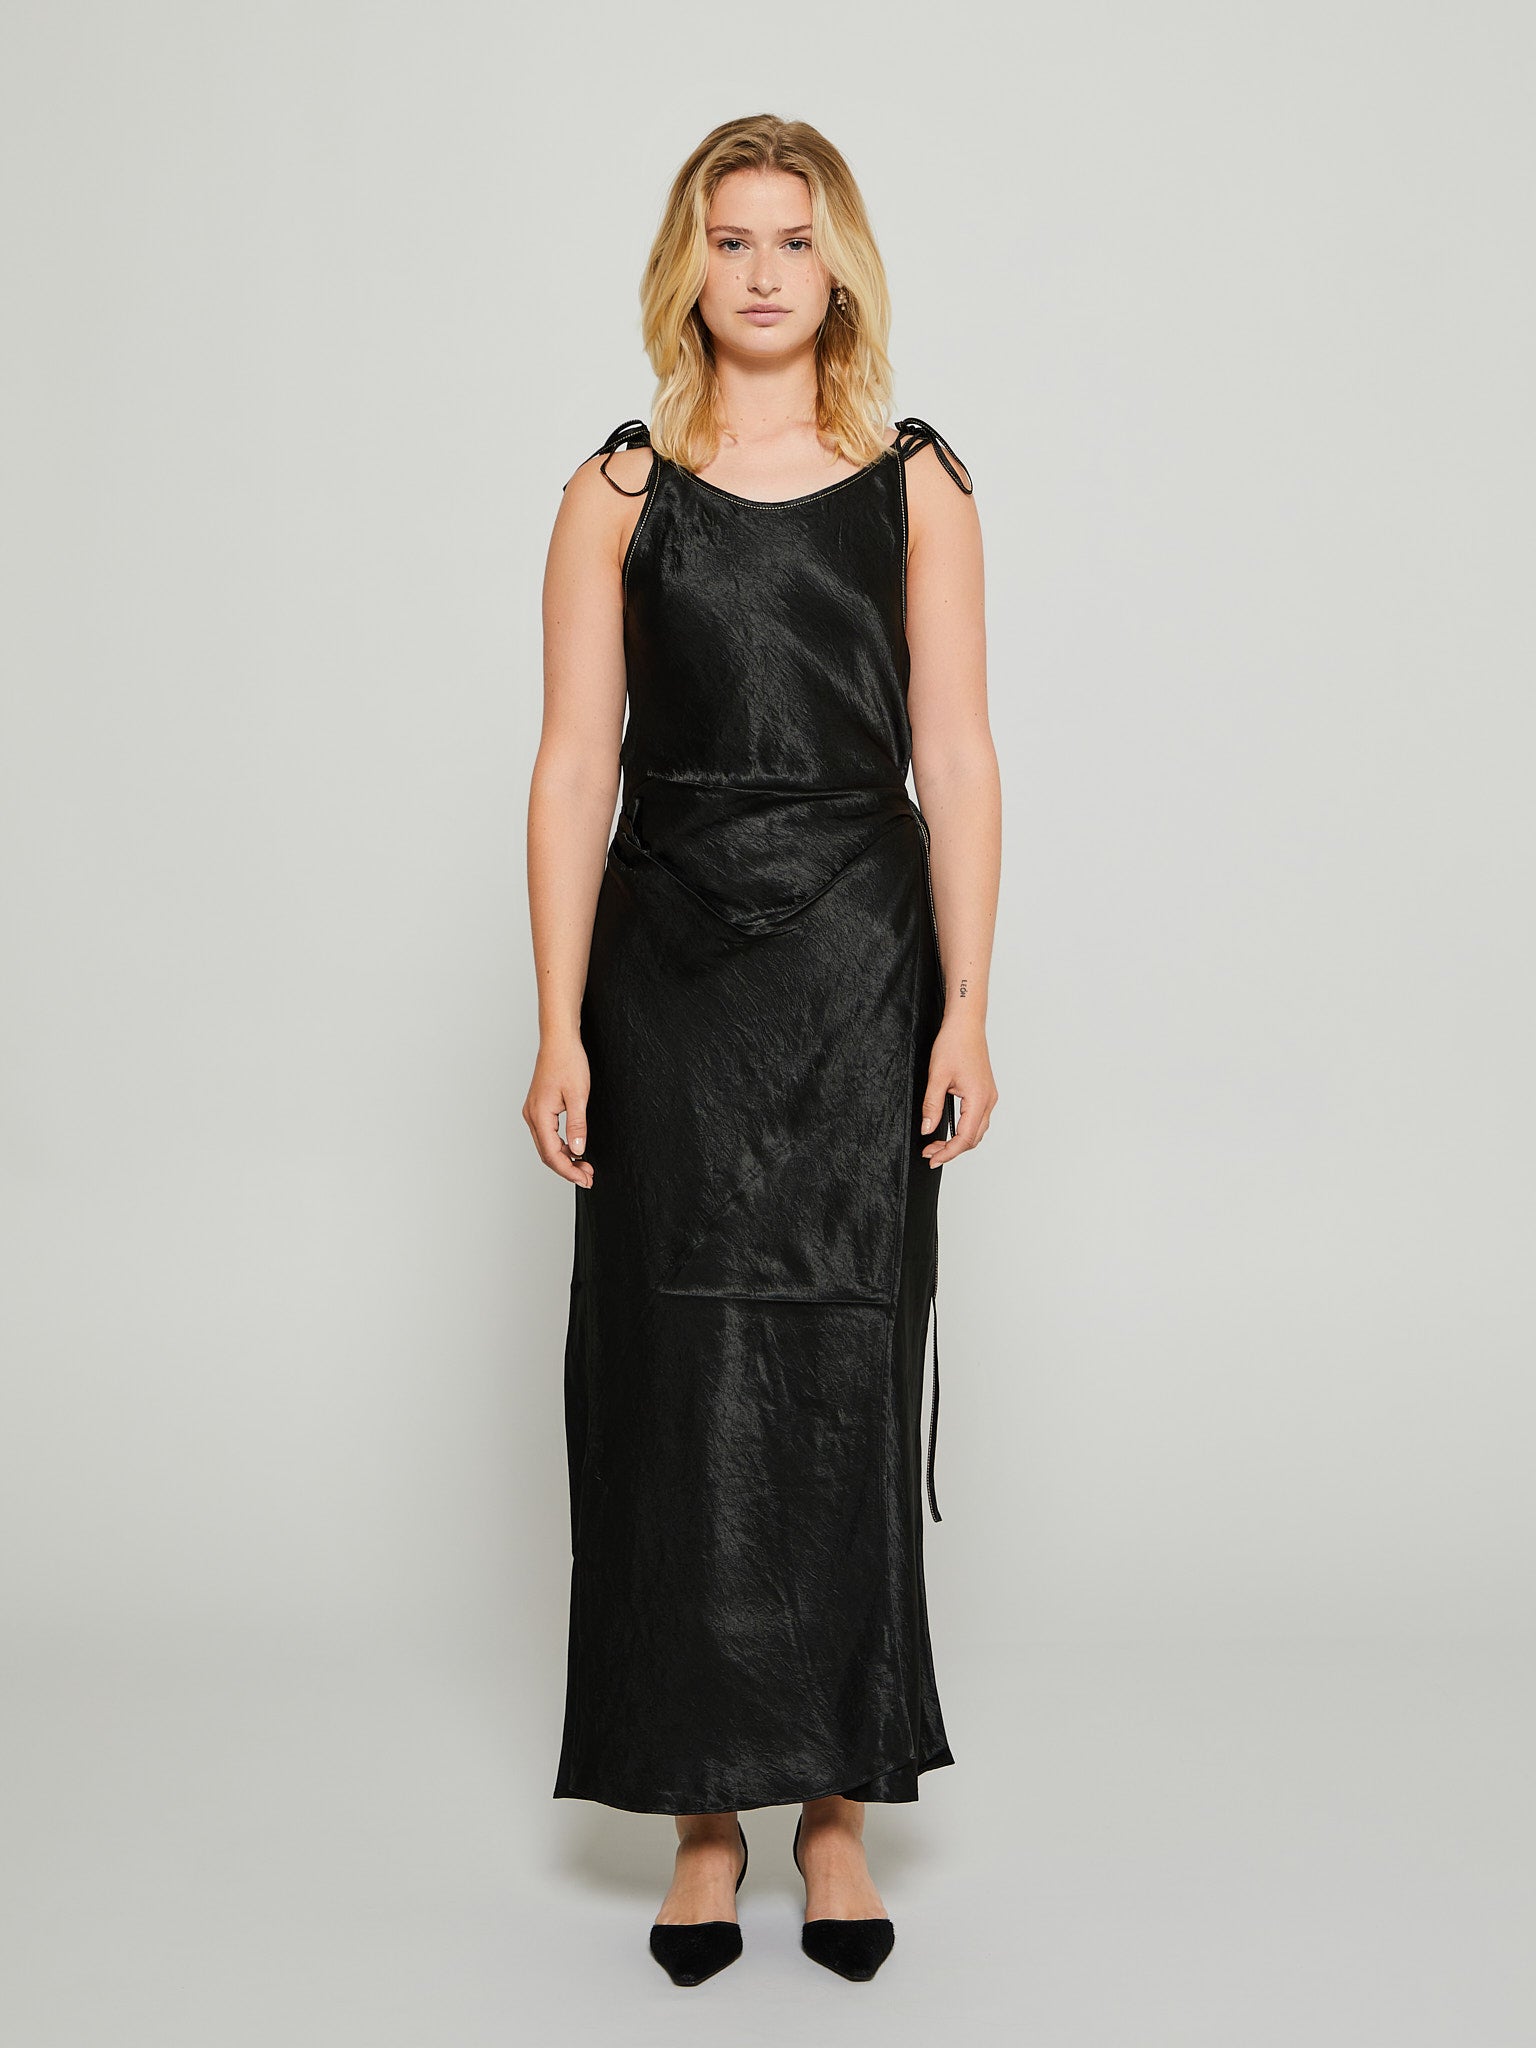 Acne Studios - Satin Strap Dress in Black